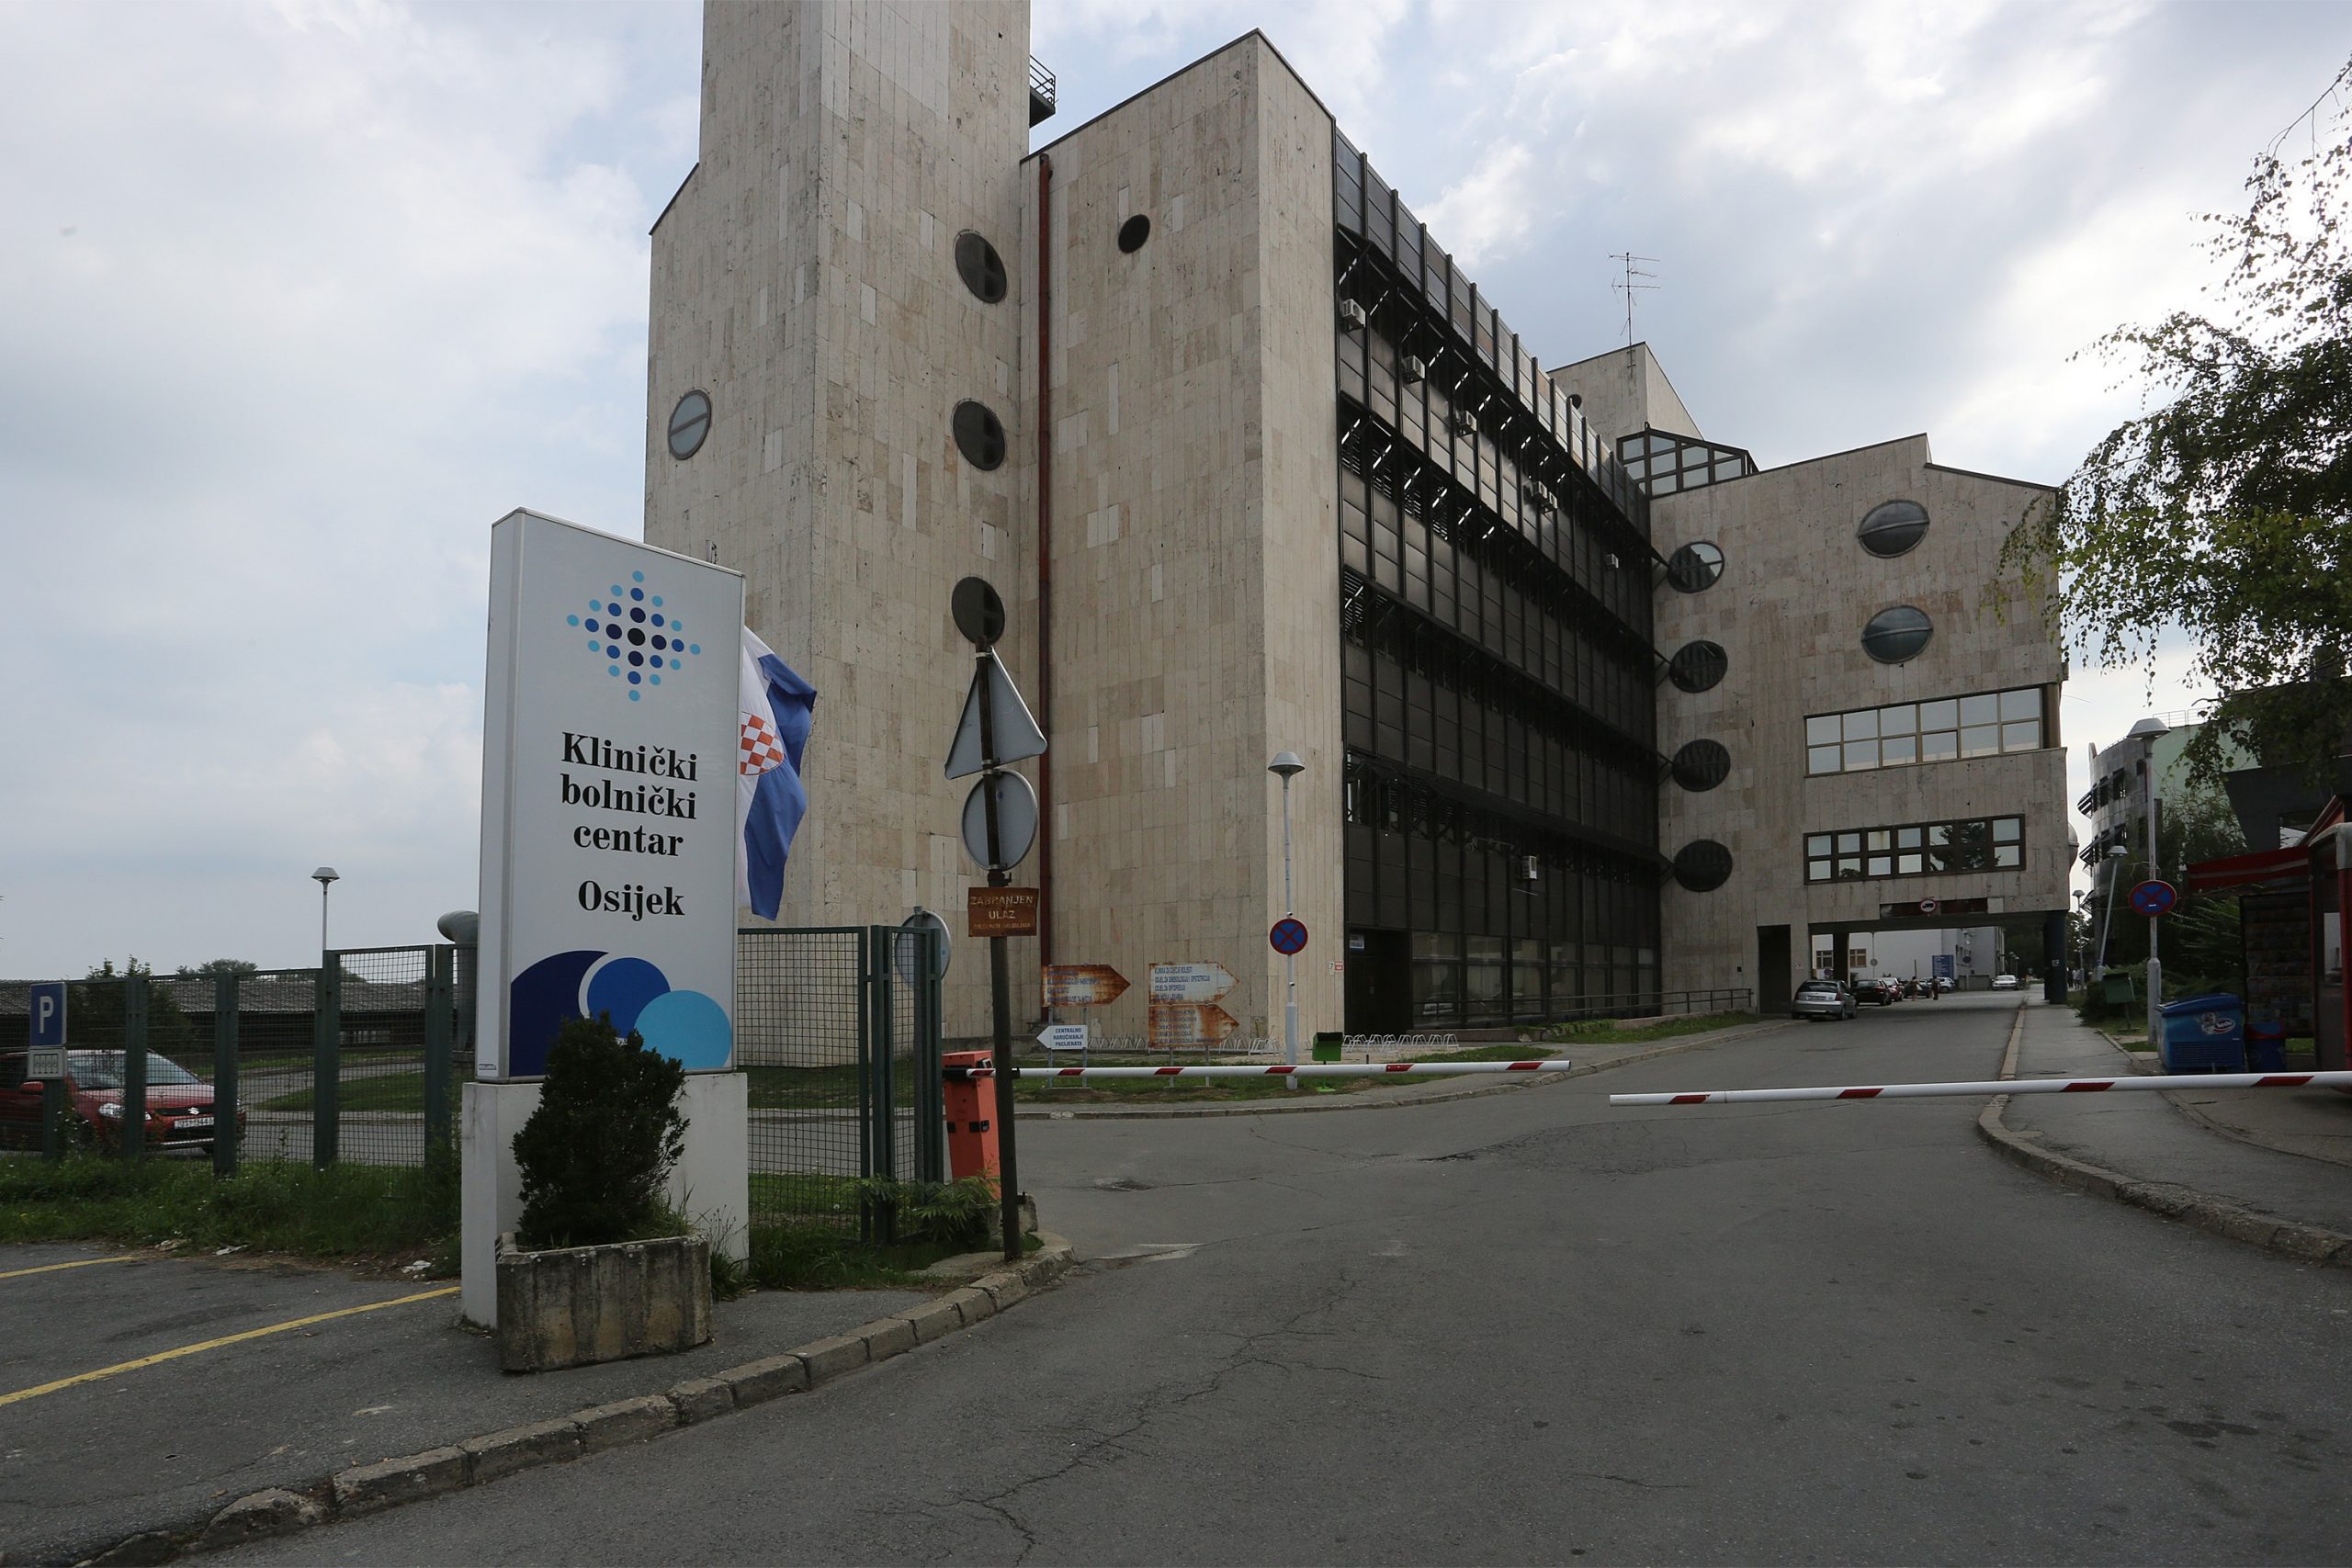 23.08.2014., Osijek -  KBC Osijek, ulaz u Klinicki bolnicki centar.
Photo: Marko Mrkonjic/PIXSELL